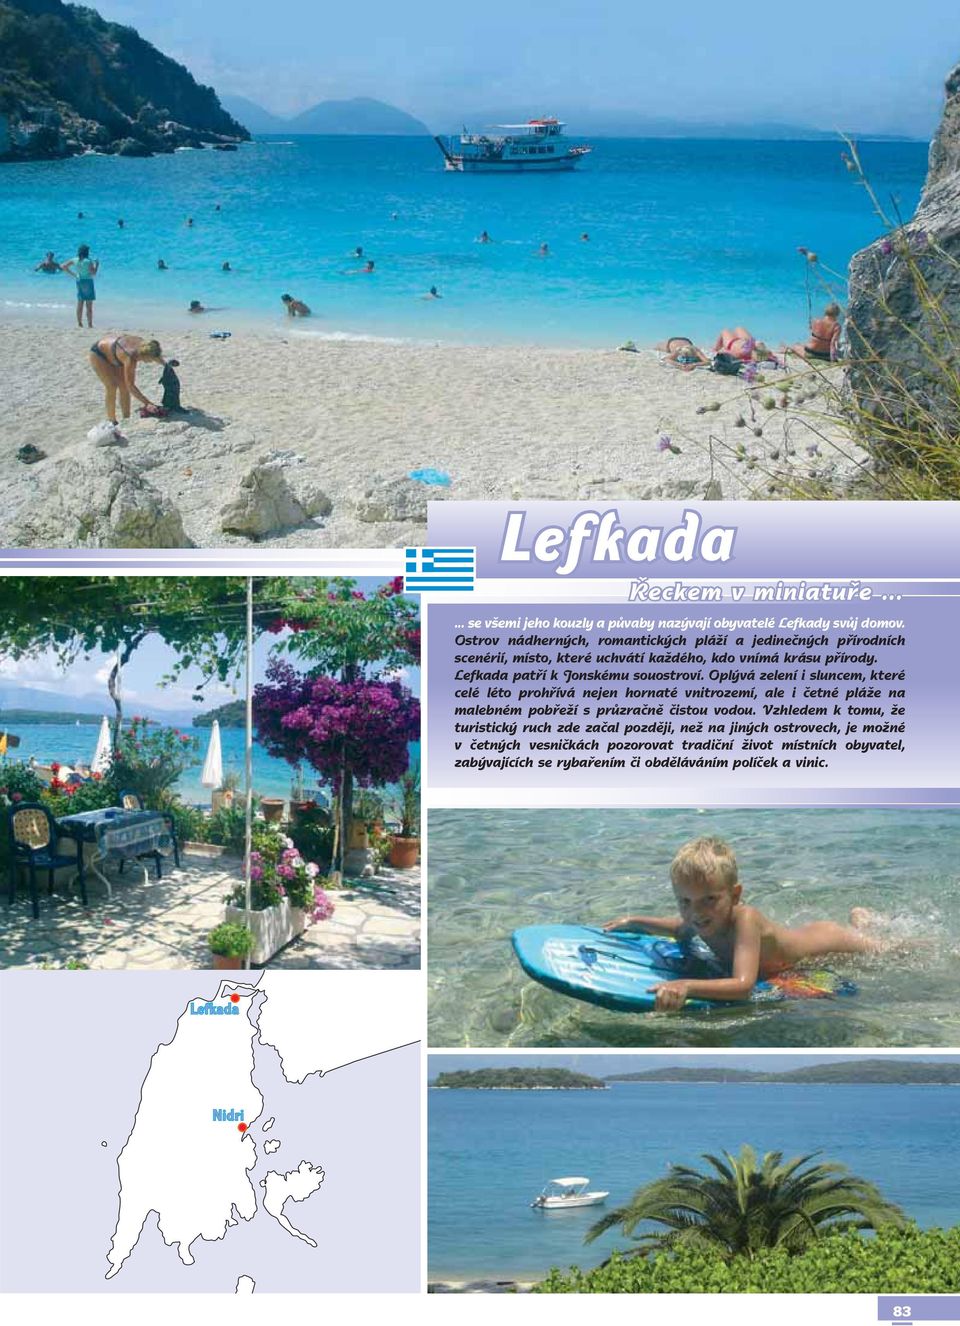 Lefkada patří k Jonskému souostroví.